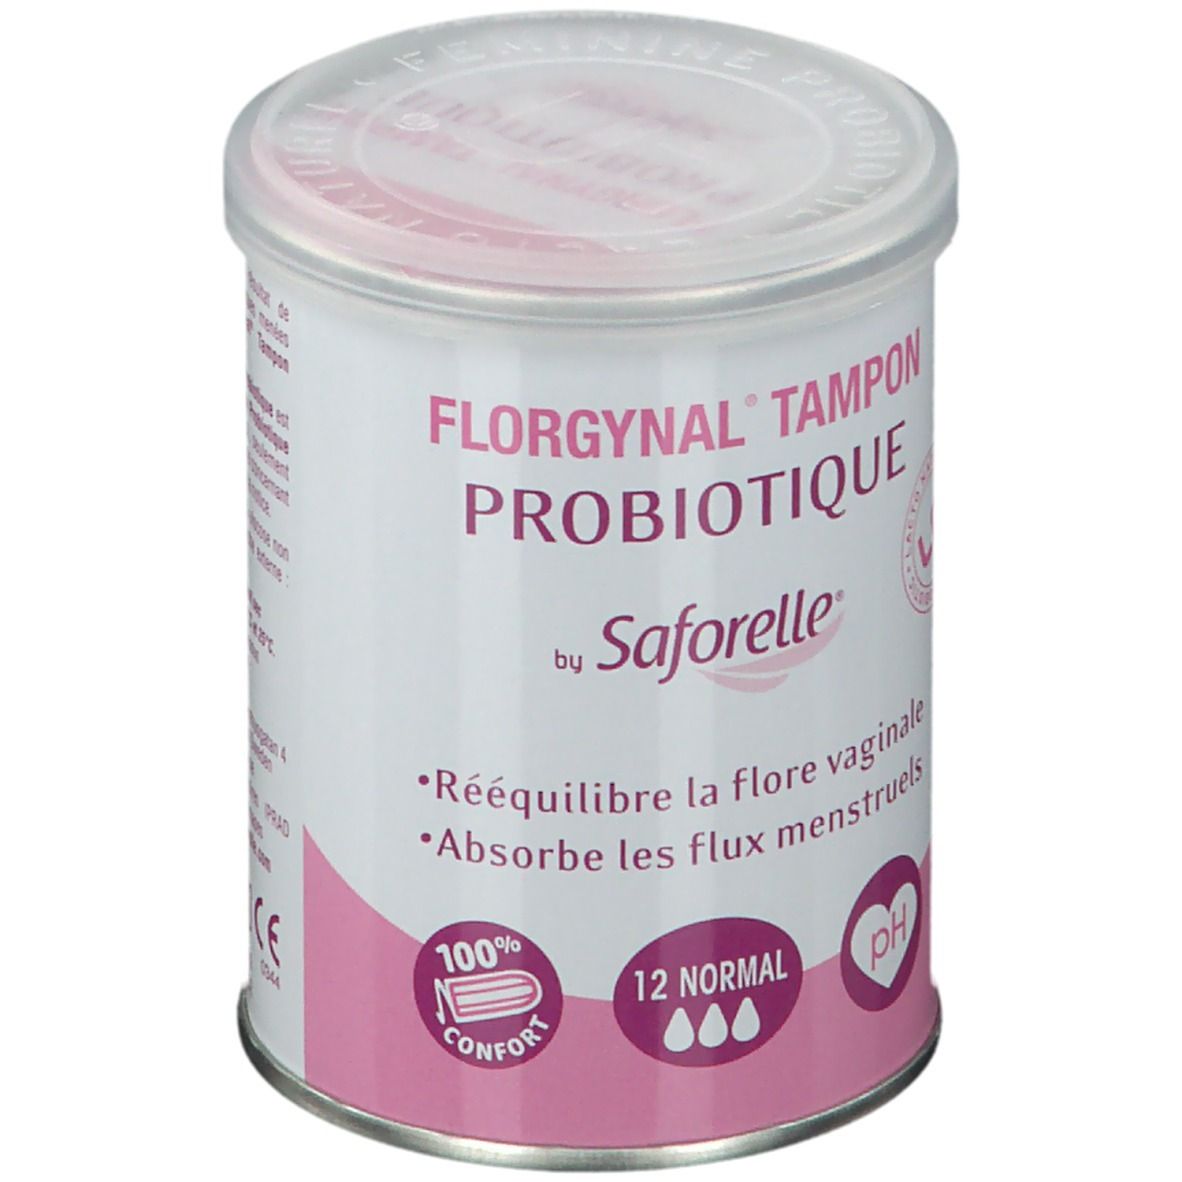 Saforelle Florgynal Tampon Probiotique